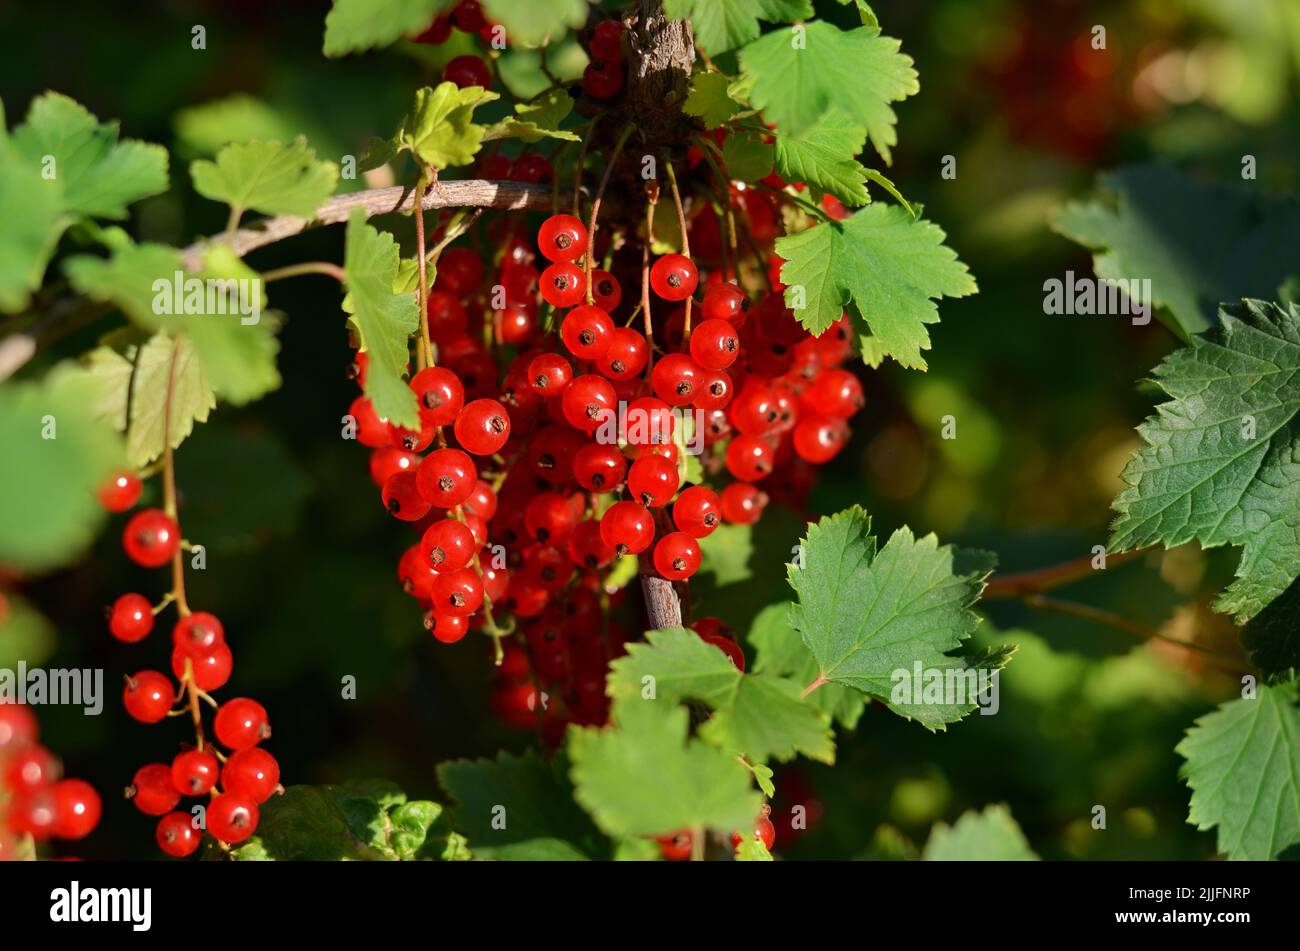 Nahaufnahme von reifen roten Johannisbeerbeeren mit grünem Lauch auf einem Ast. Konzept des Anbaus Ihrer eigenen Bio-Lebensmittel. Stockfoto